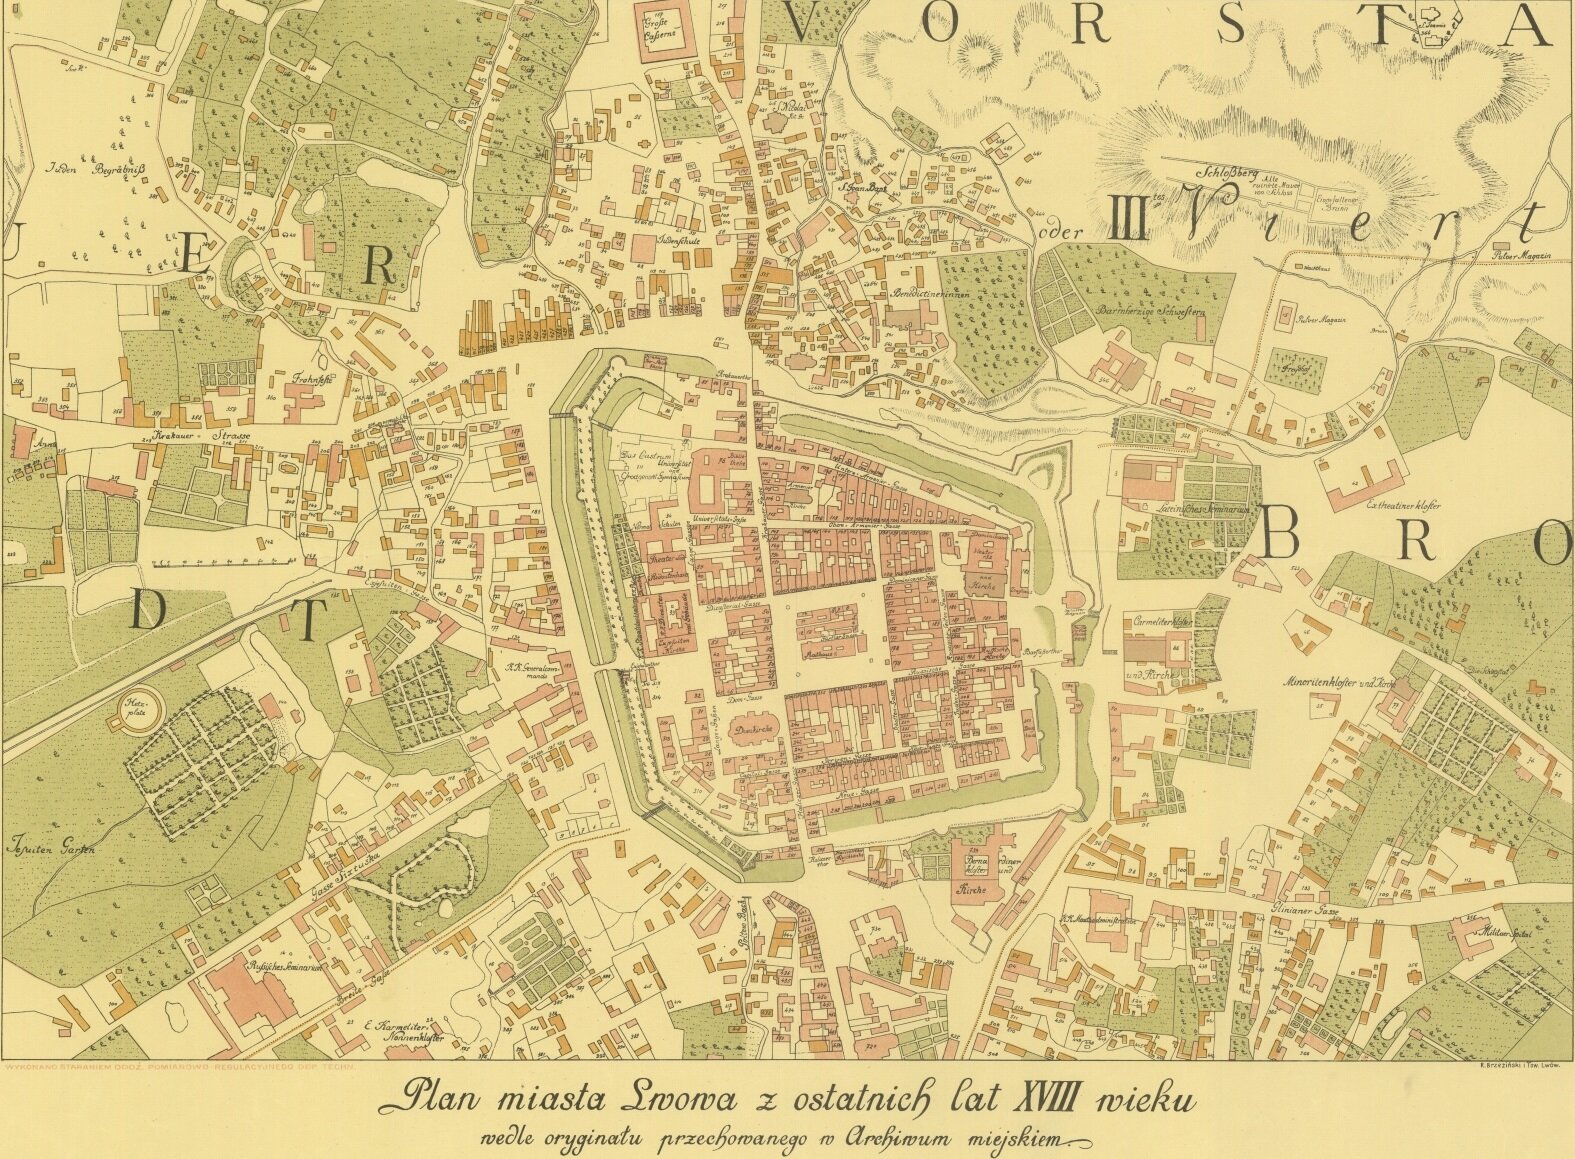 Ilustracja przedstawia stary plan Lwowa. W środkowej części mapy jest jest centrum miasta. Dookoła centrum są liczne zabudowania. Na mapie zaznaczono między innymi kościoły, cmentarze. 